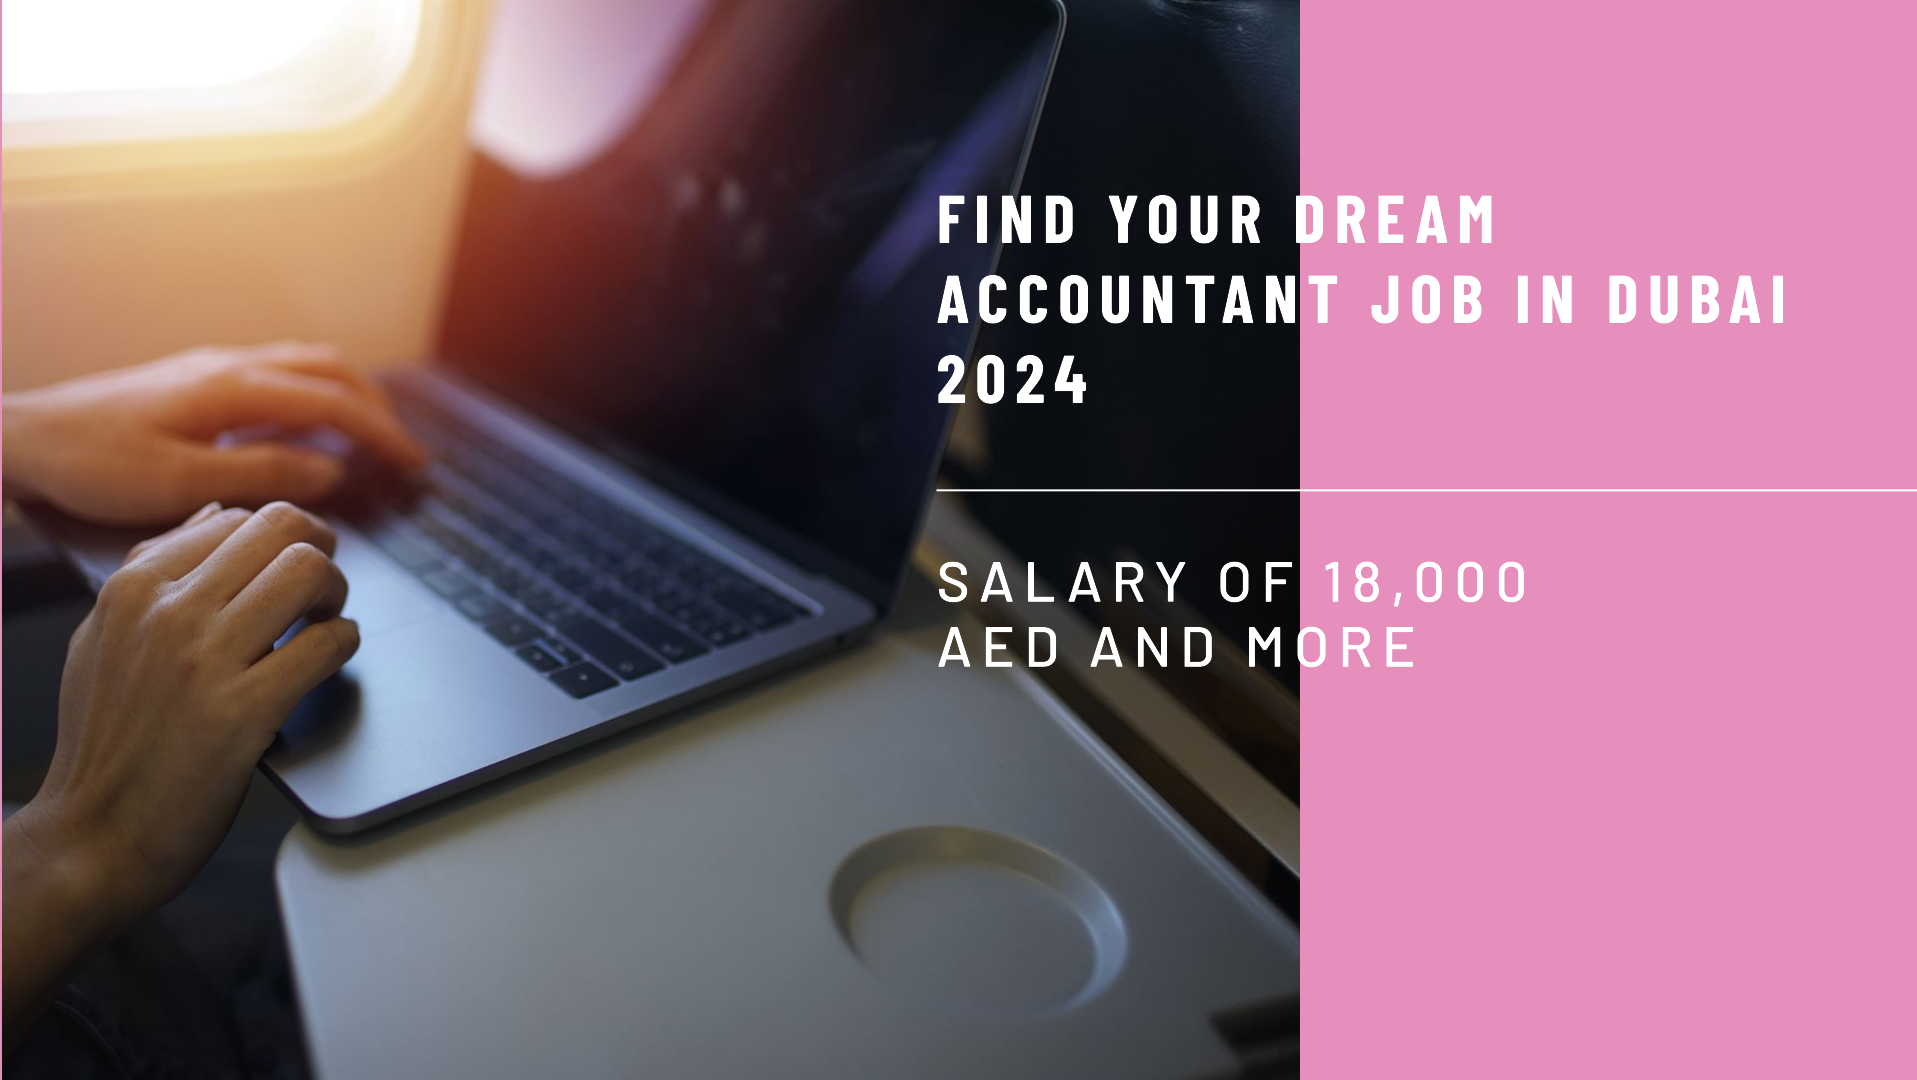 Accountant Jobs in Dubai 2024 | Salary 18,000 AED